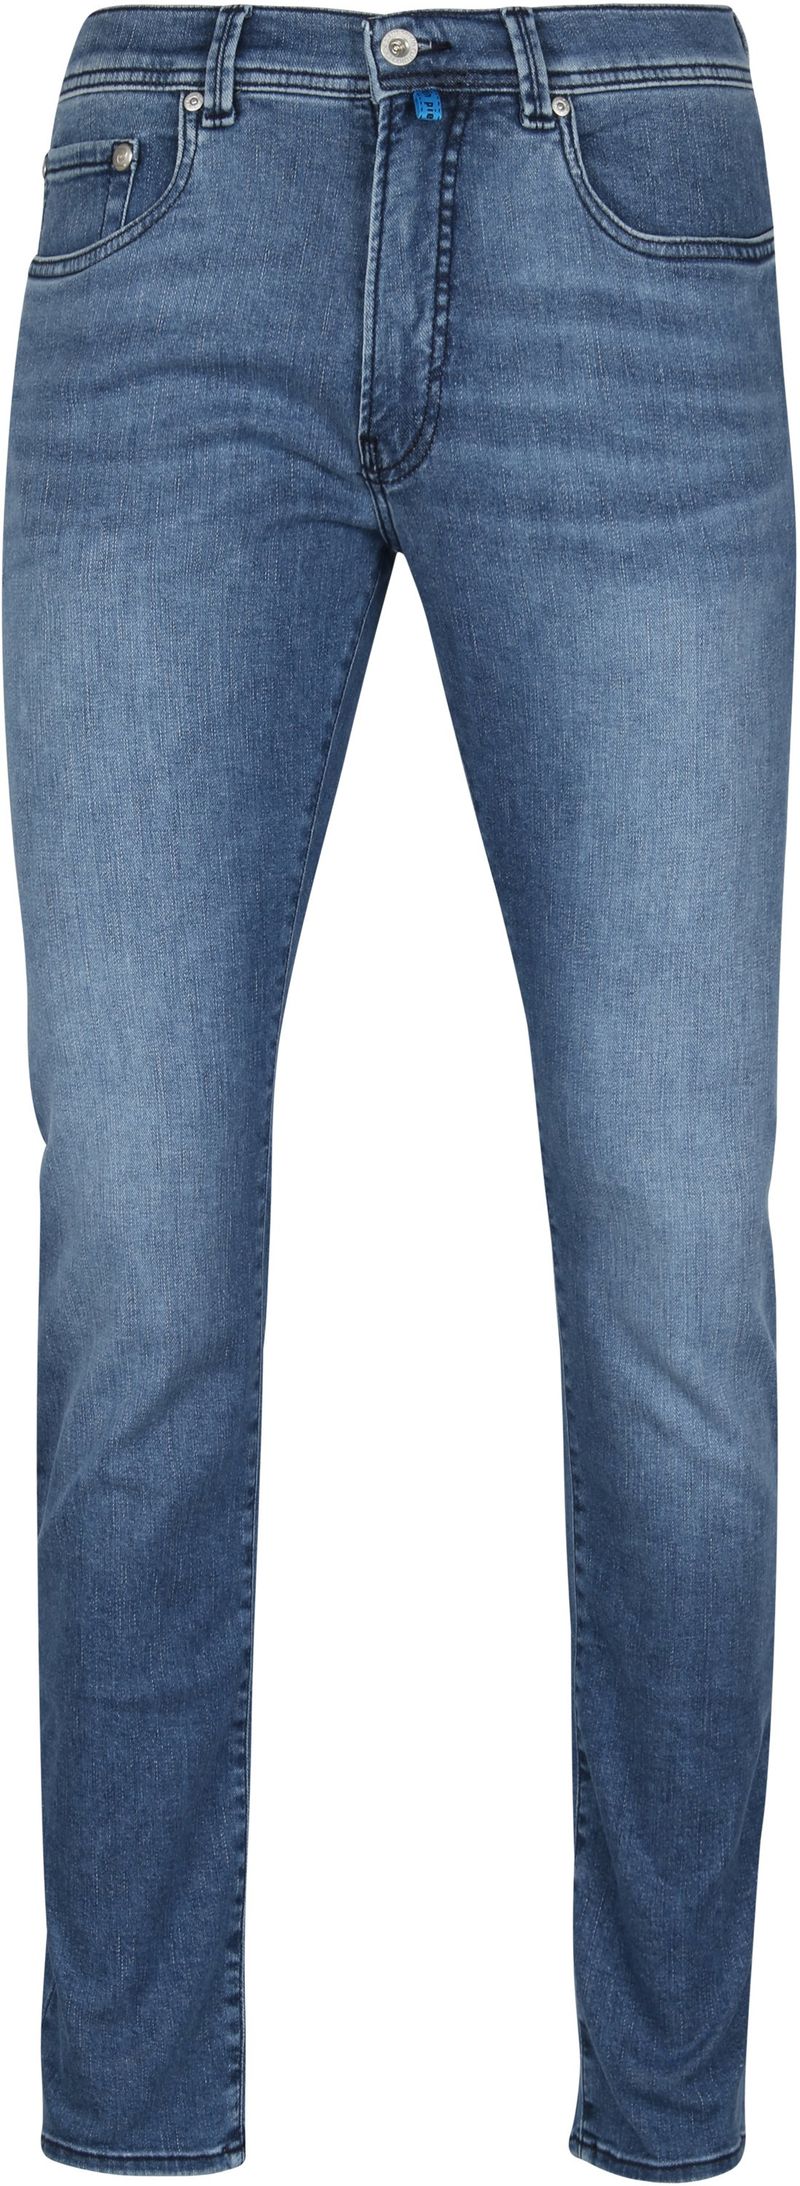 Pierre Cardin Jeans Lyon Tapered Future Flex Blau - Größe W 30 - L 34 günstig online kaufen